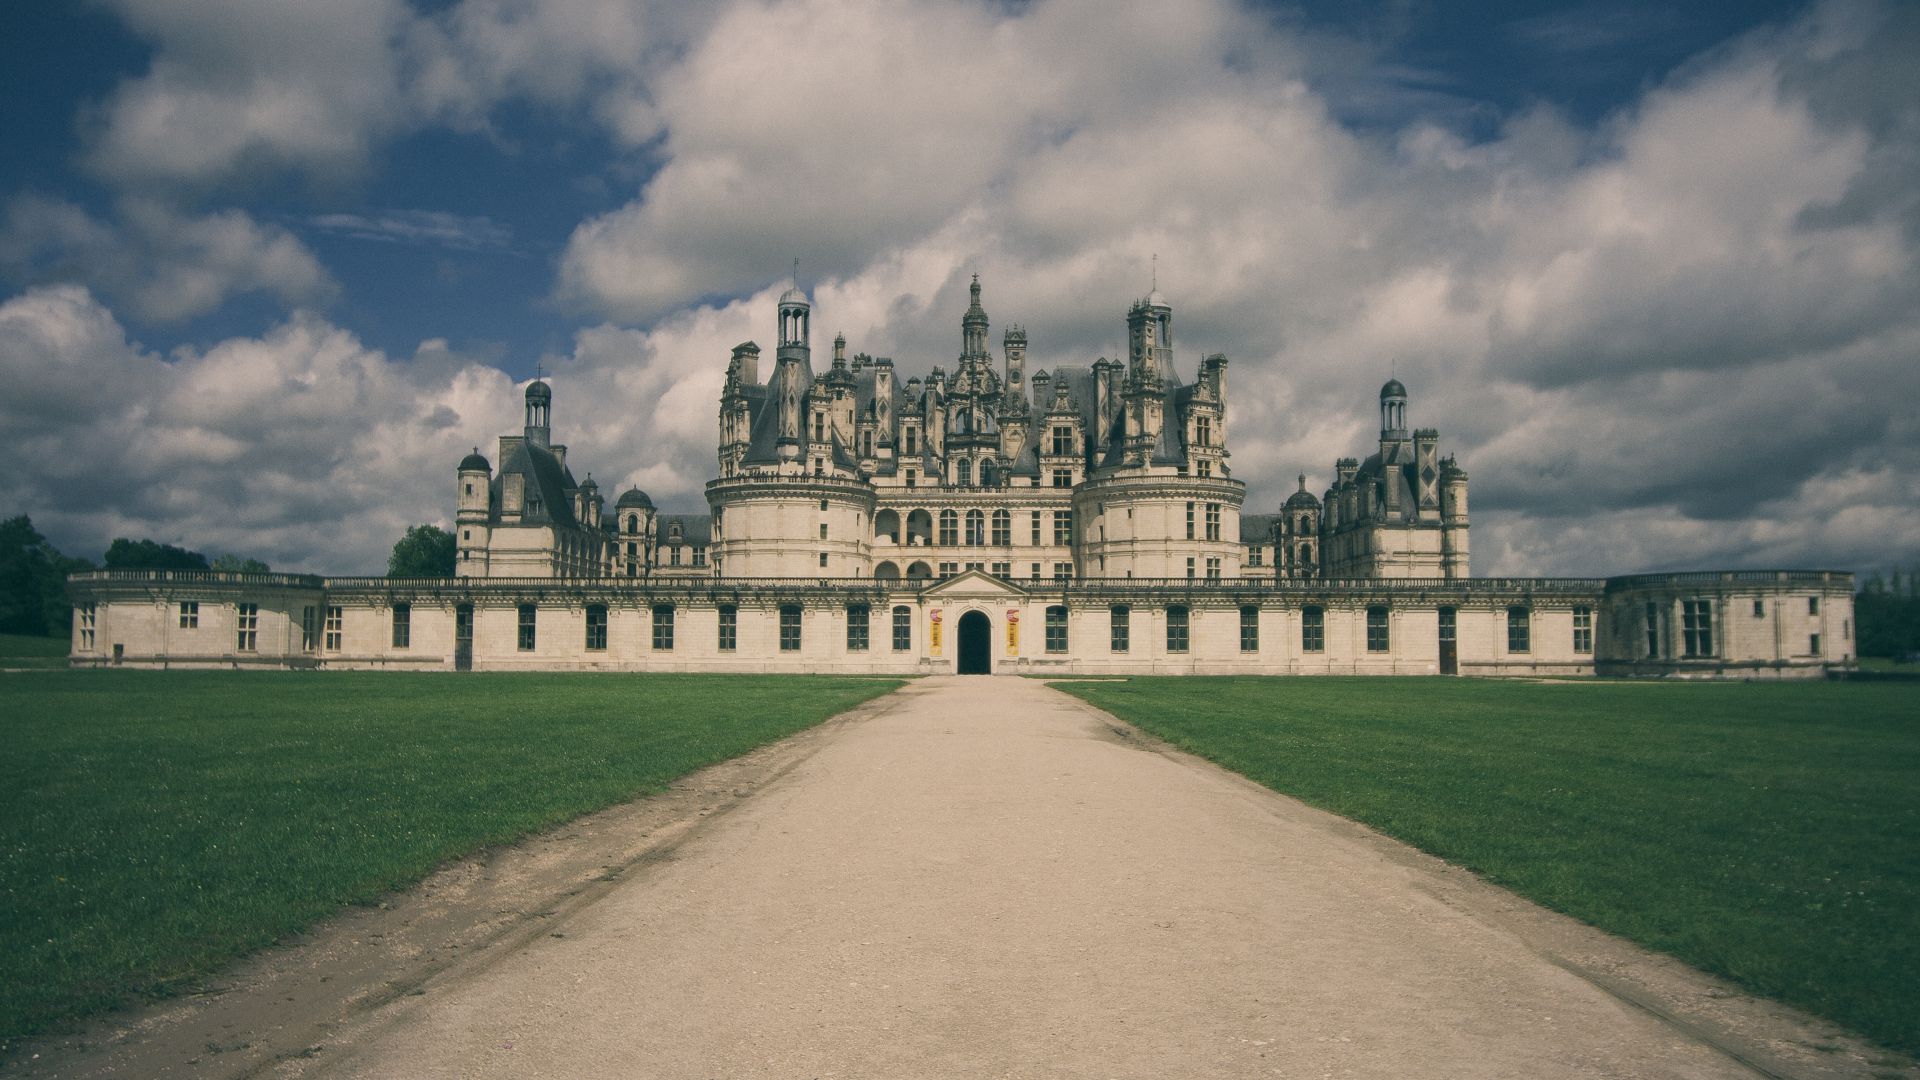 Замок Шамбор, Франция, замок, путешествия, туризм, Château de Chambord, France, castle, travel, tourism (horizontal)